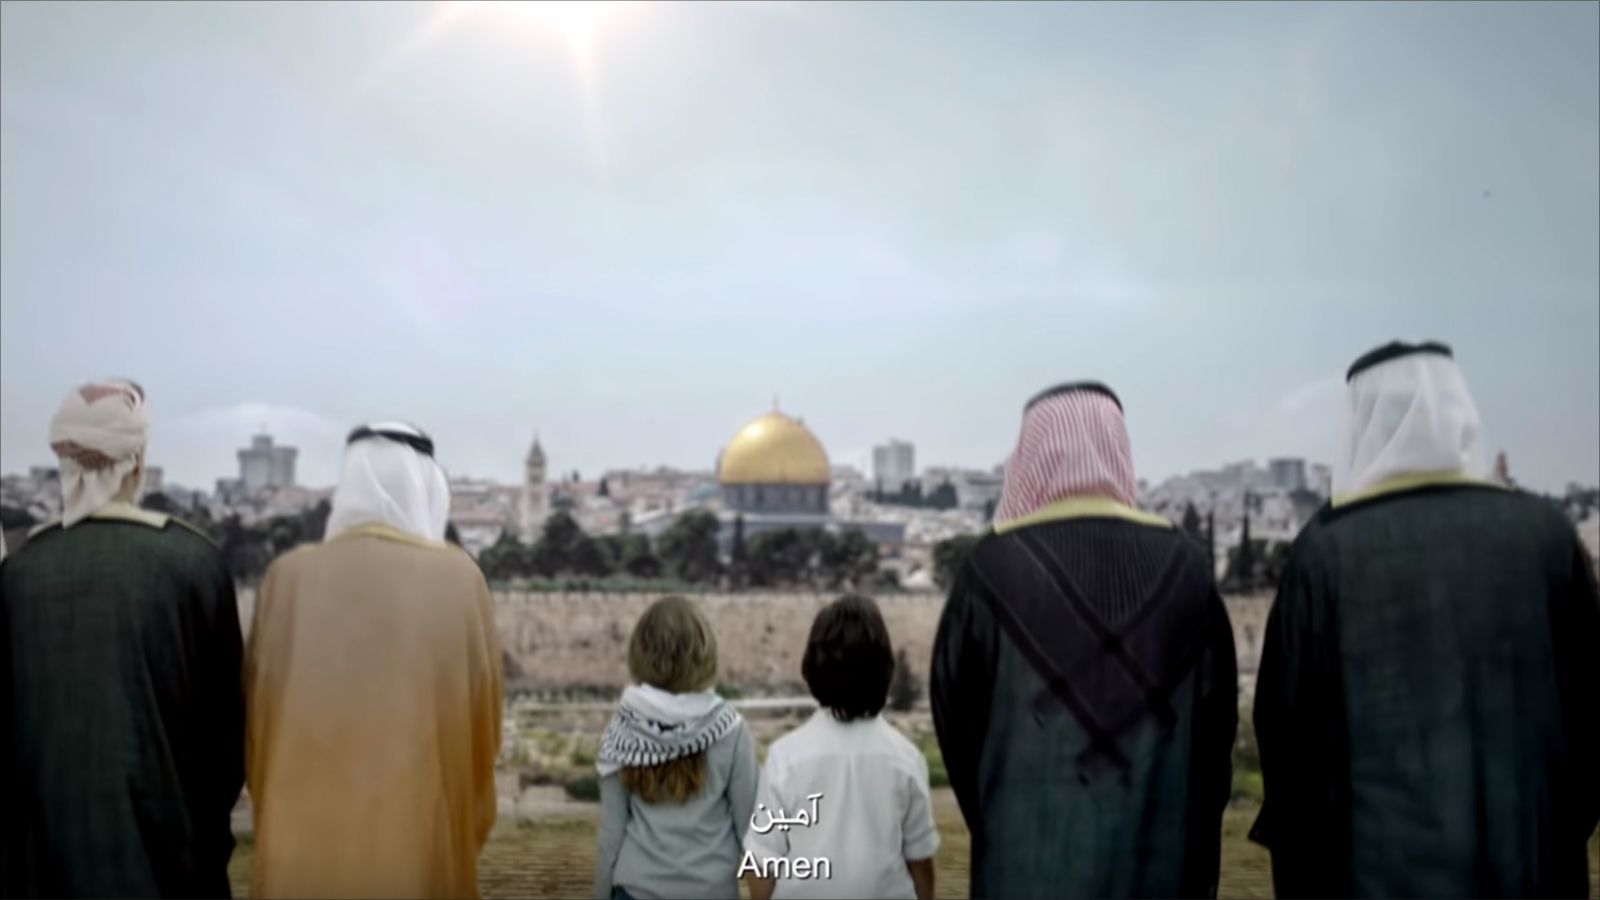 ‪الفيديو الترويجي أكد بوضوح فلسطينية القدس‬ (مواقع التواصل الاجتماعي)